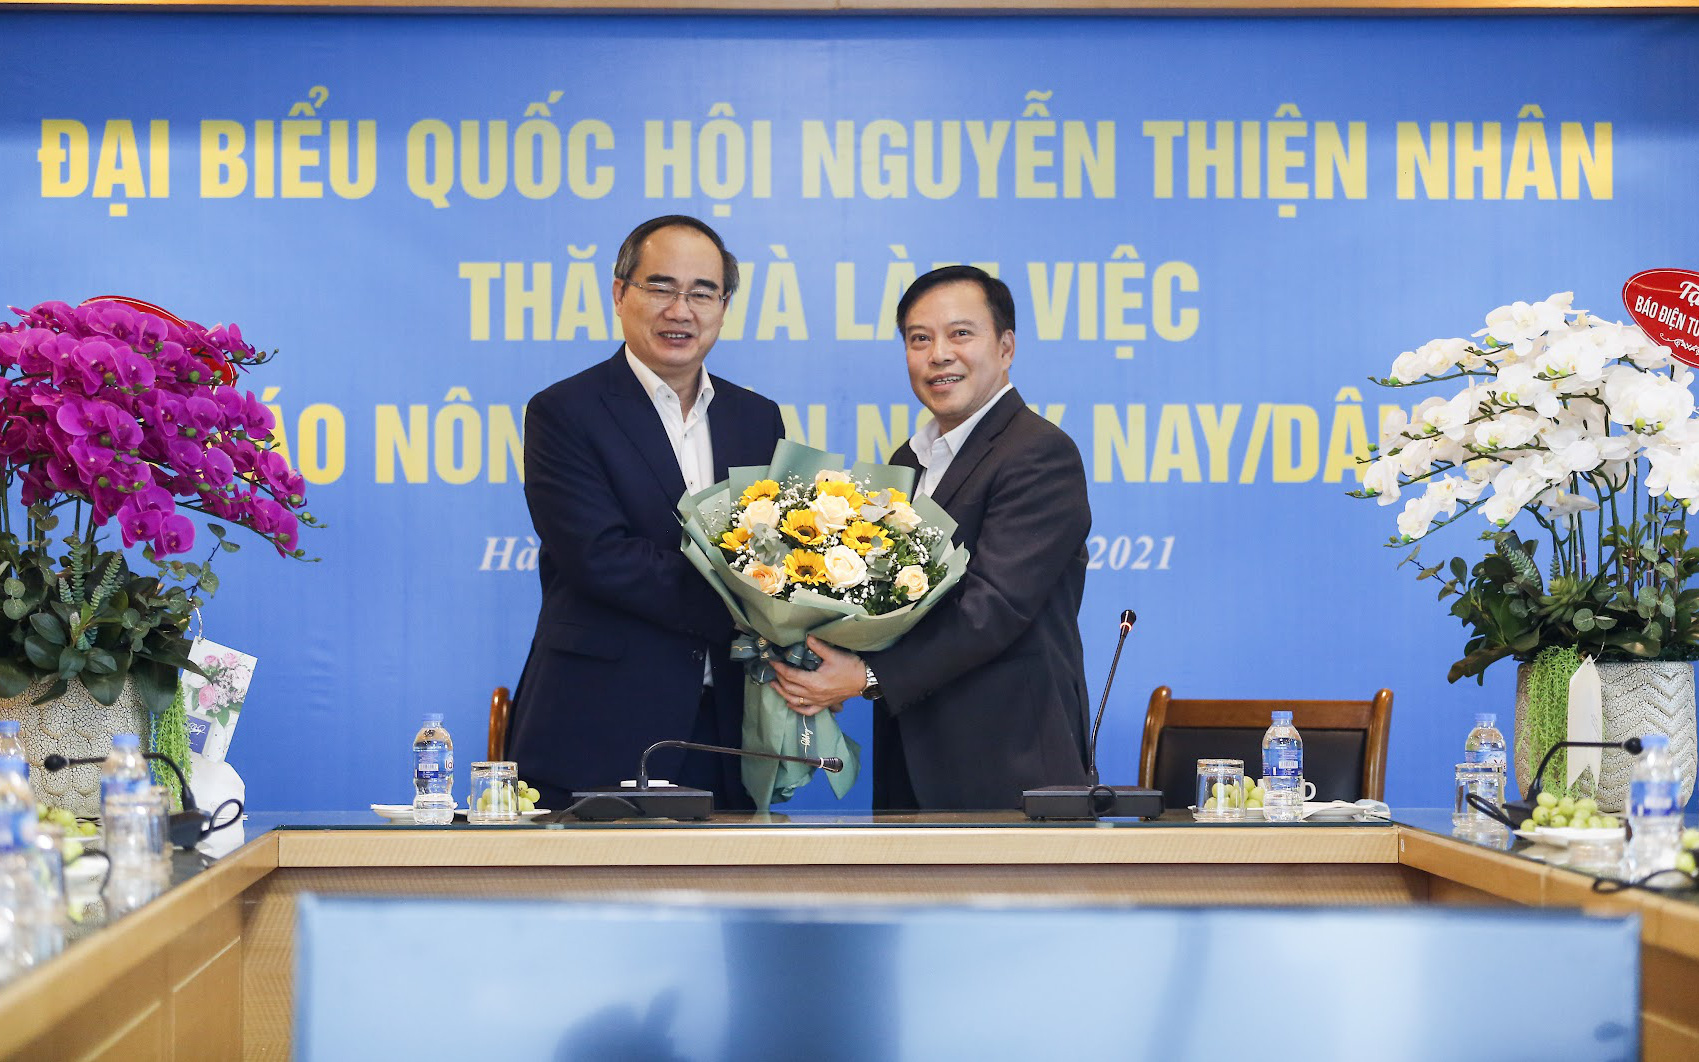 Nguyên Uỷ viên Bộ Chính trị Nguyễn Thiện Nhân: Chúc Báo NTNN trở thành địa chỉ tin cậy của tất cả người dân Việt Nam